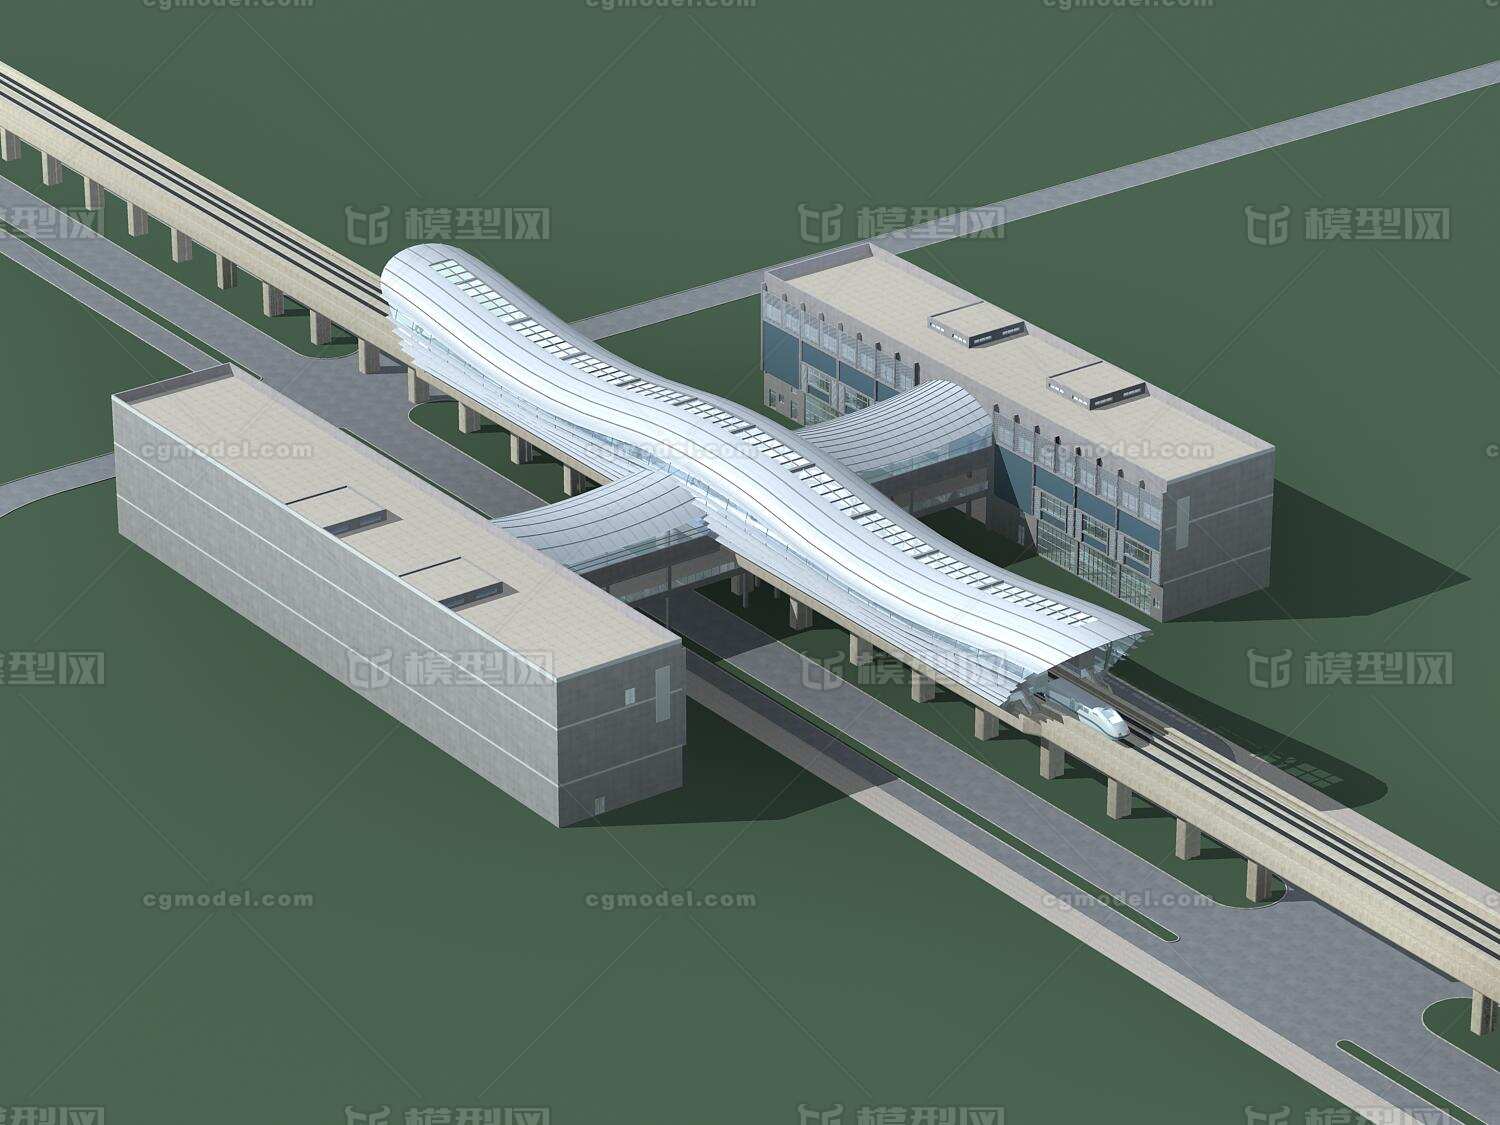 高铁站 高铁站模型 高铁 建筑 建筑模型